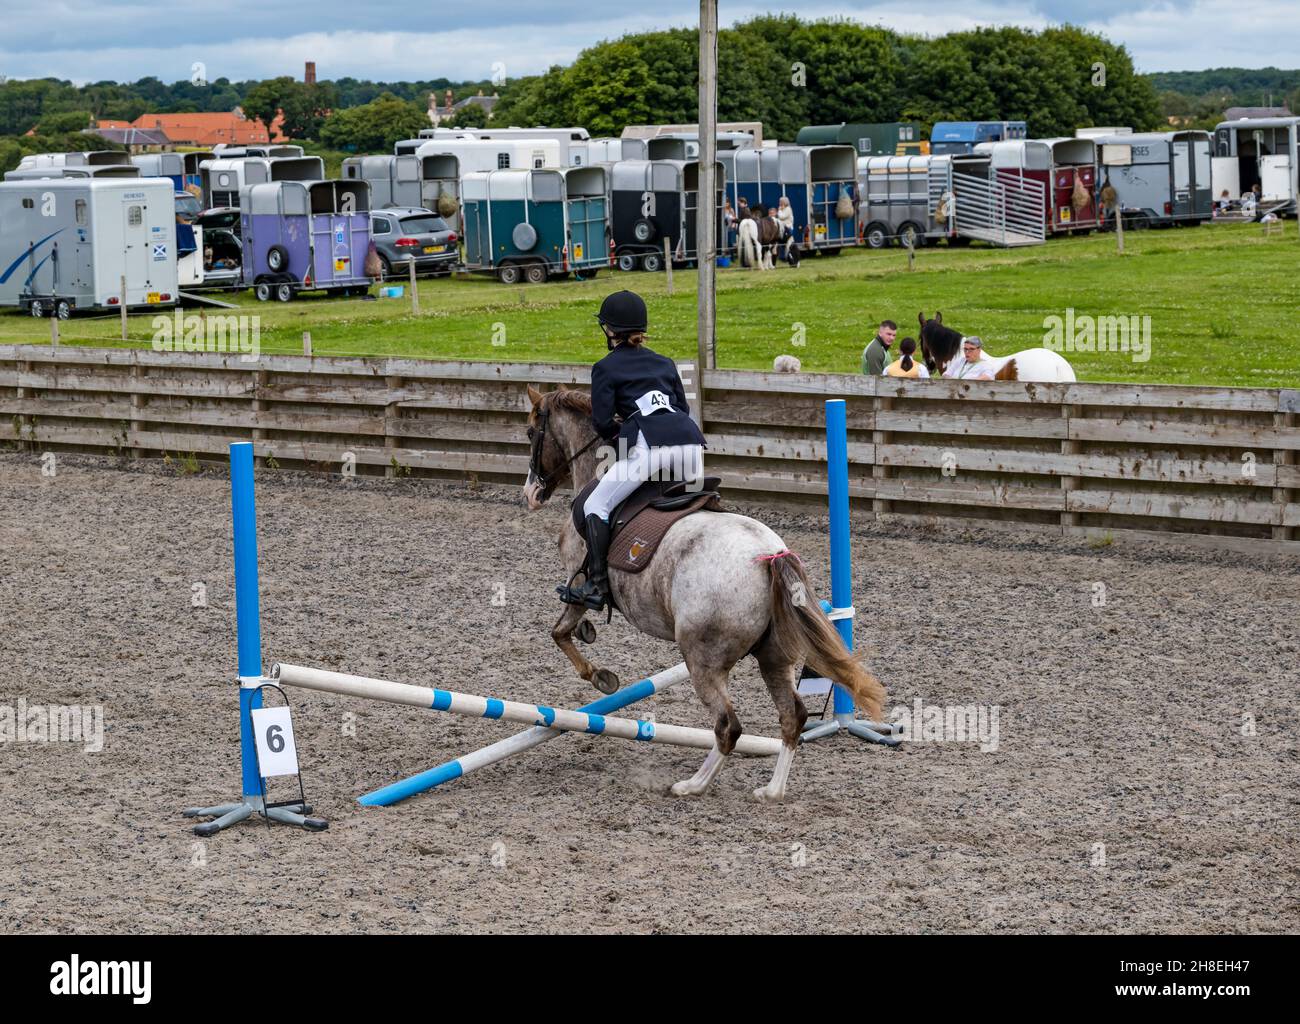 Girl cavalcando a cavallo saltando sopra i salti di cavallo nell'arena all'evento di cavallo estivo, East Lothian, Scozia, Regno Unito Foto Stock